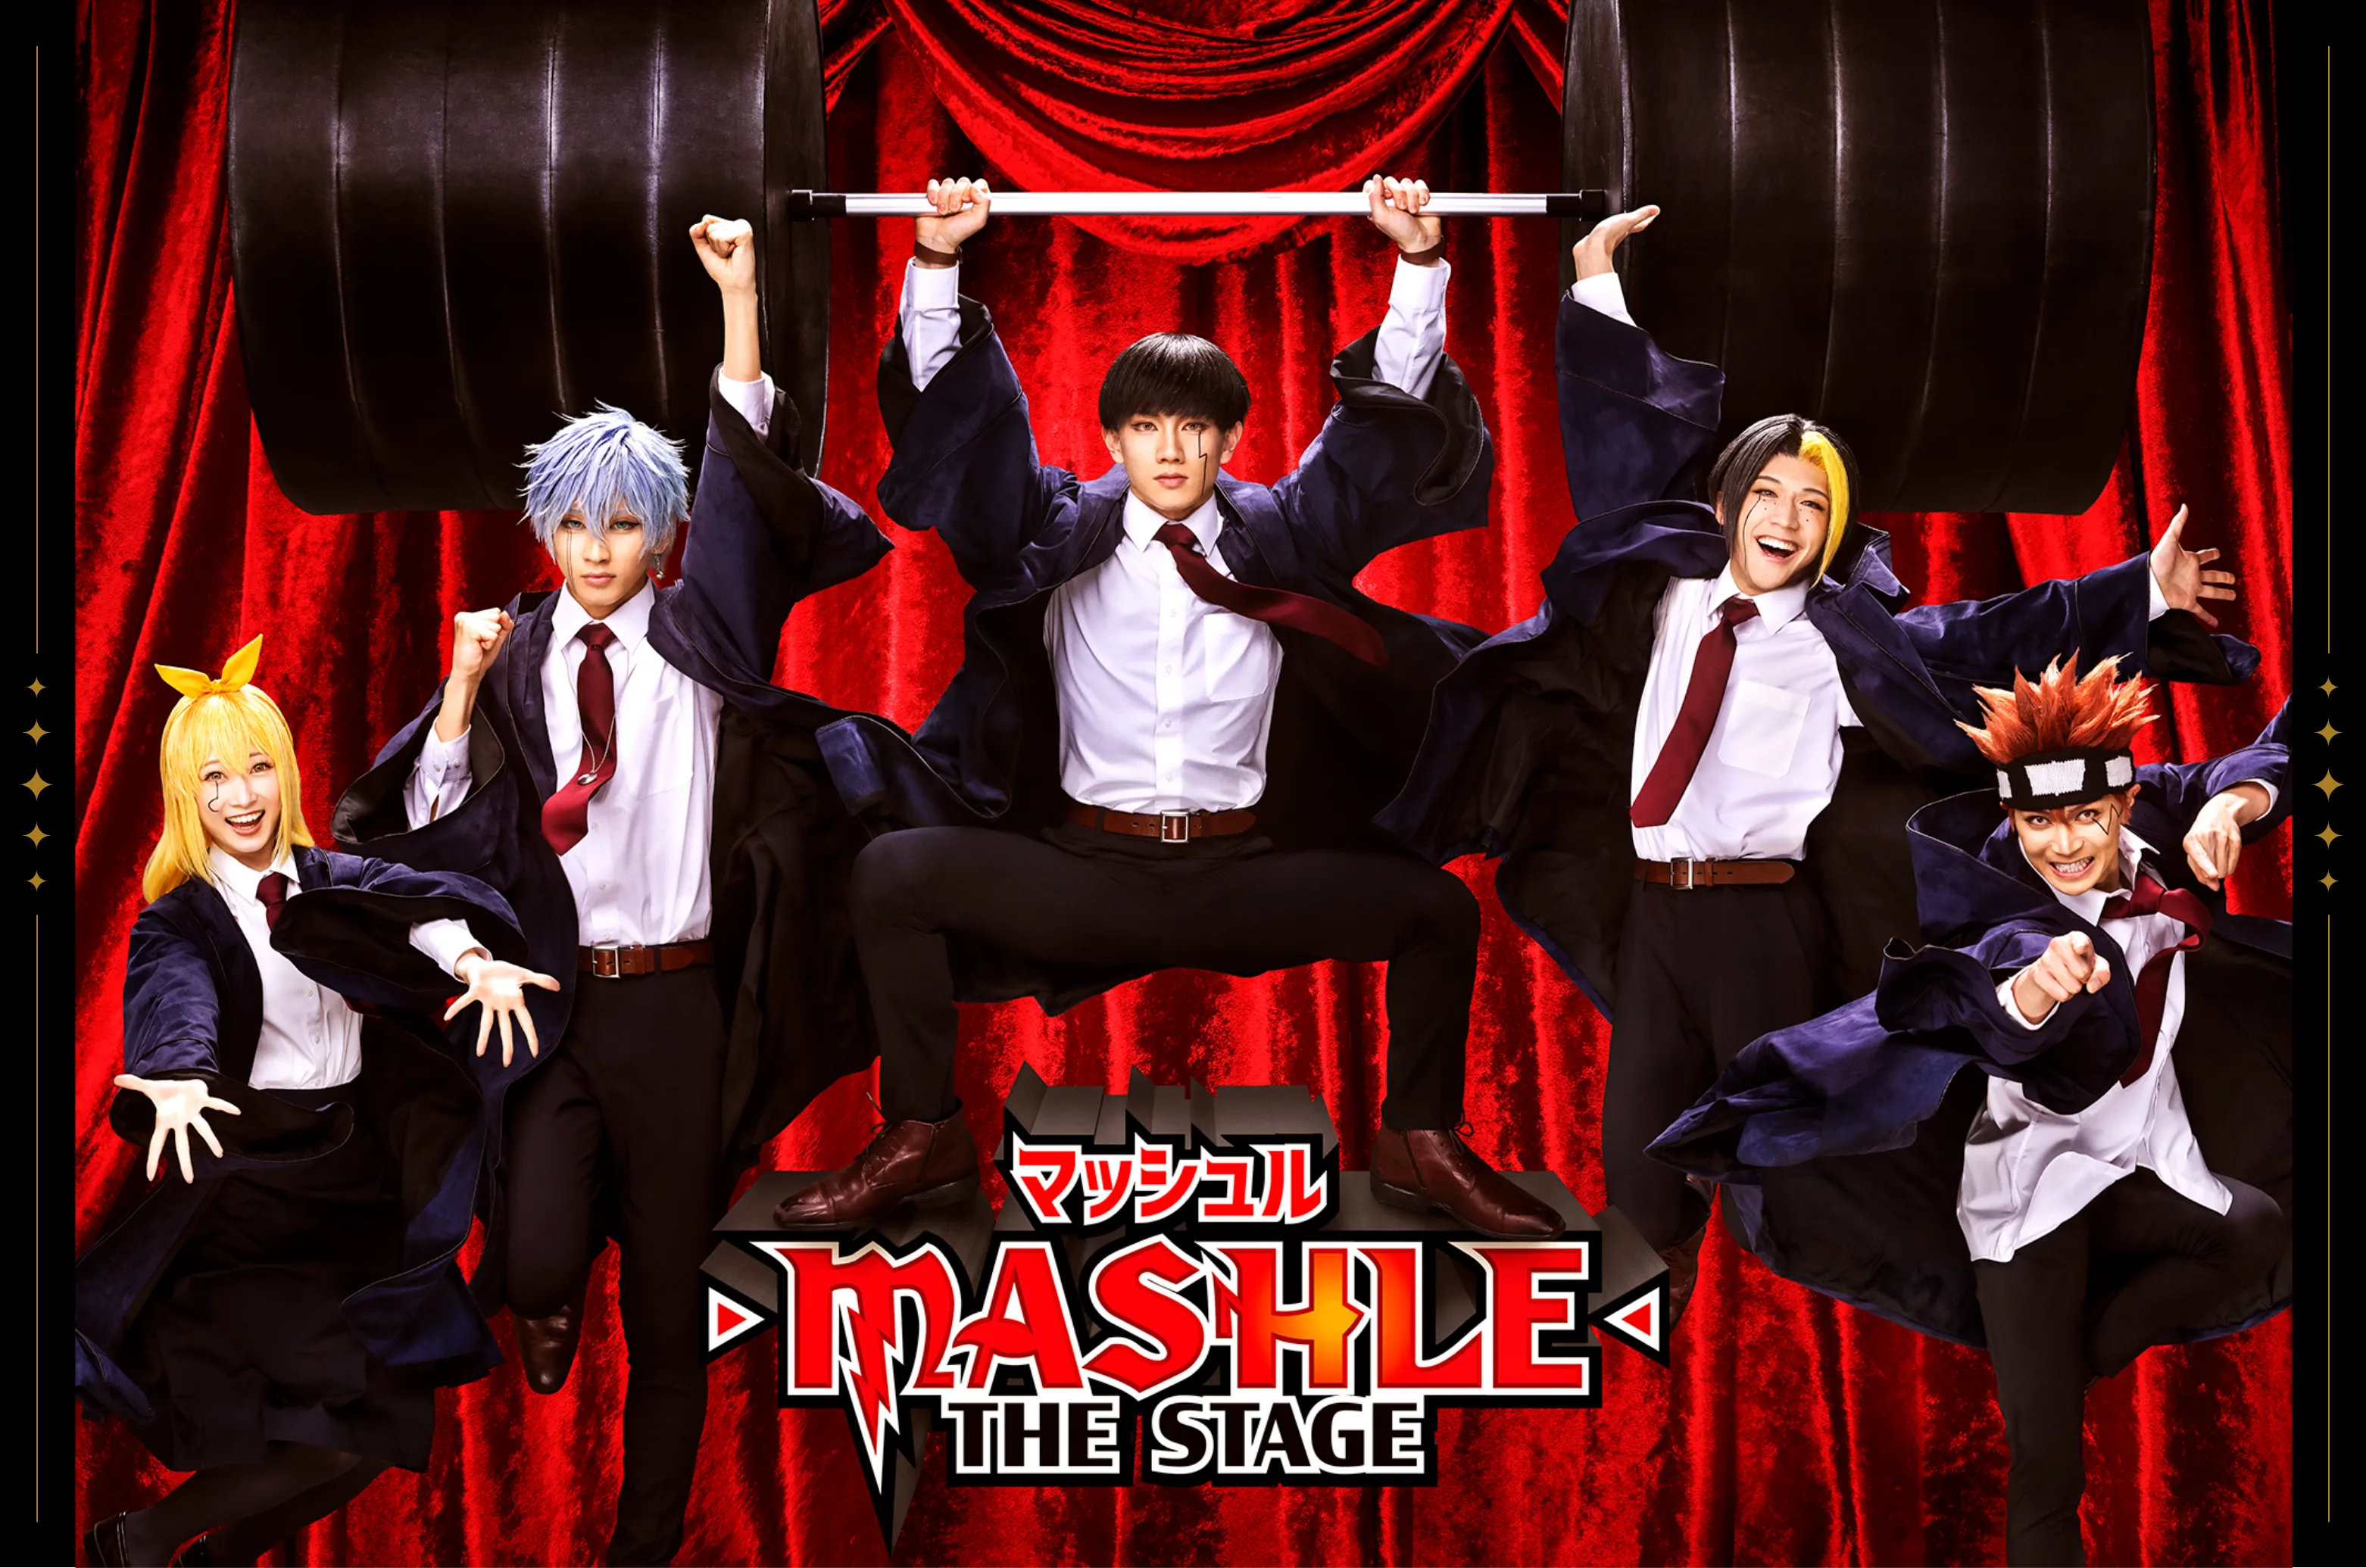 舞台「マッシュル-MASHLE-」THE STAGE 公式サイト